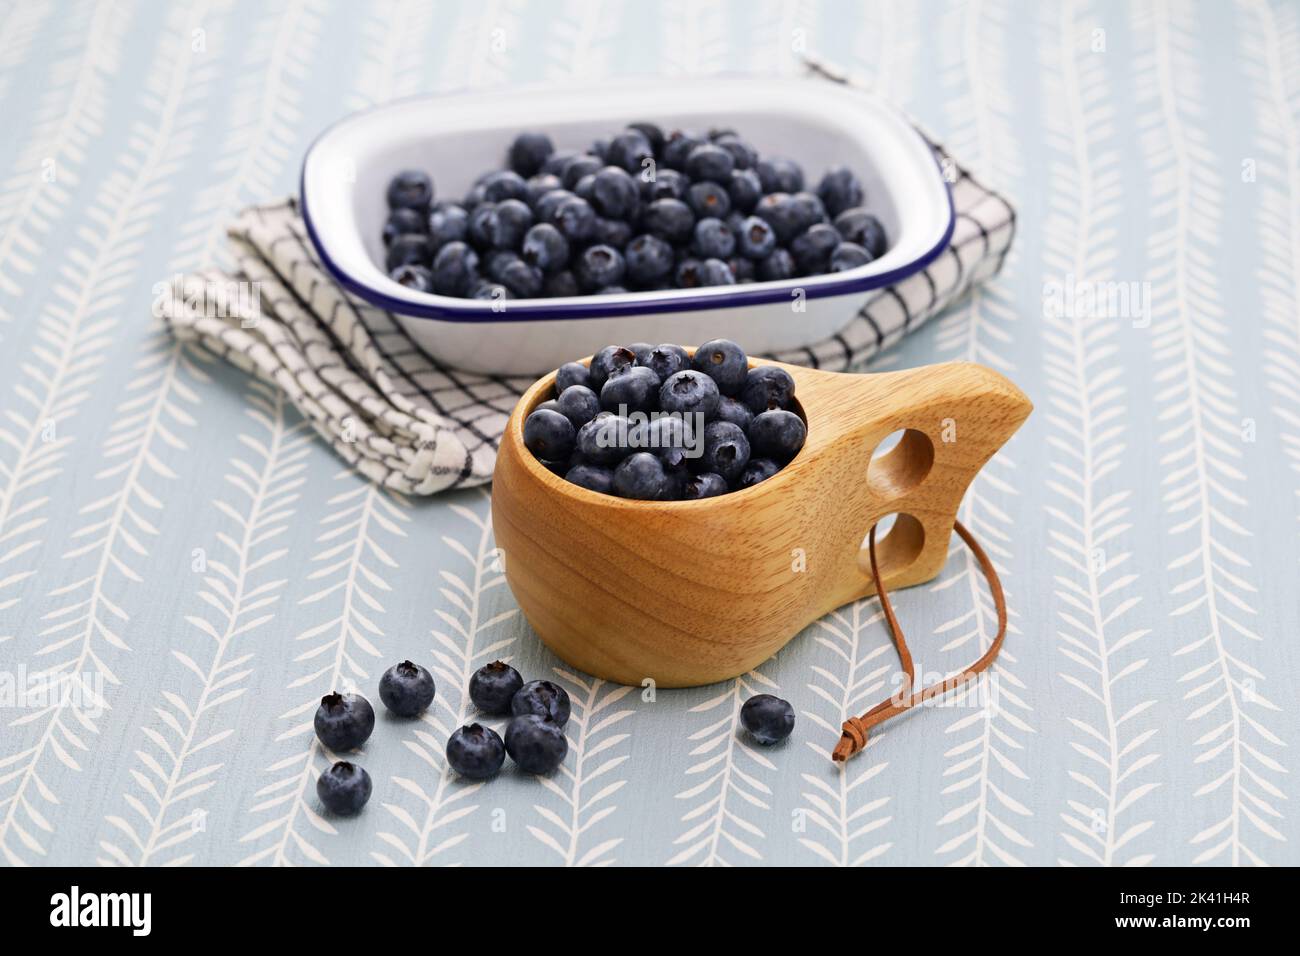 Kuksa(Finnish wooden mug) and fresh blueberries Stock Photo